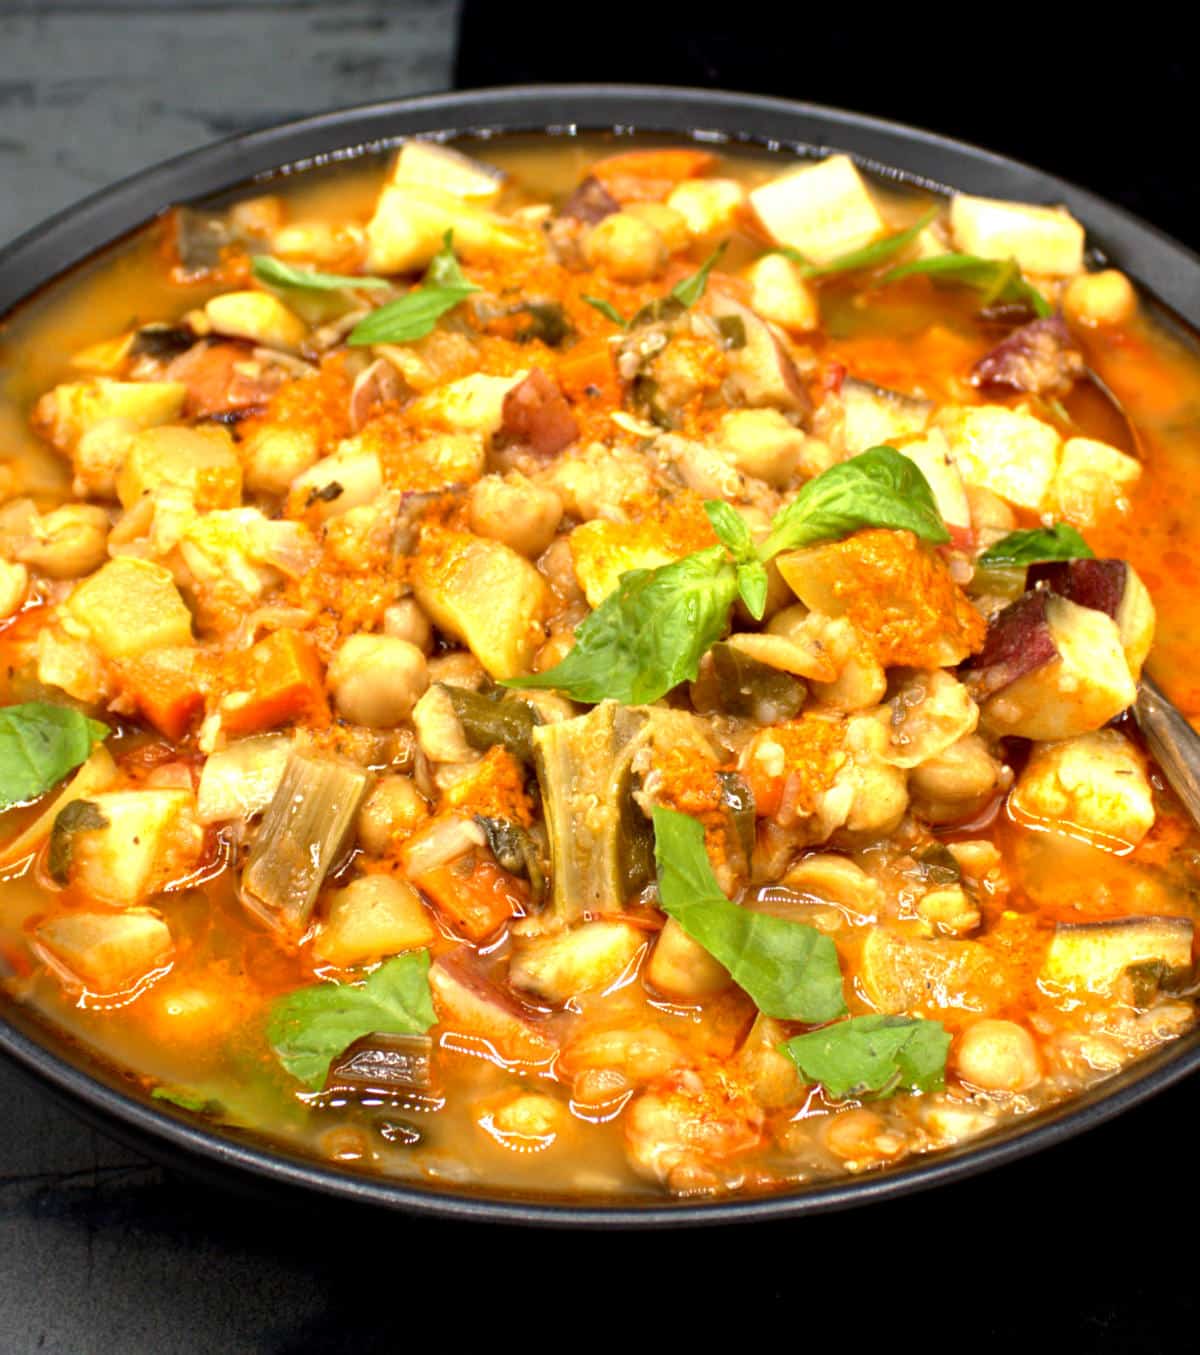 Vegetable stew in bowl.